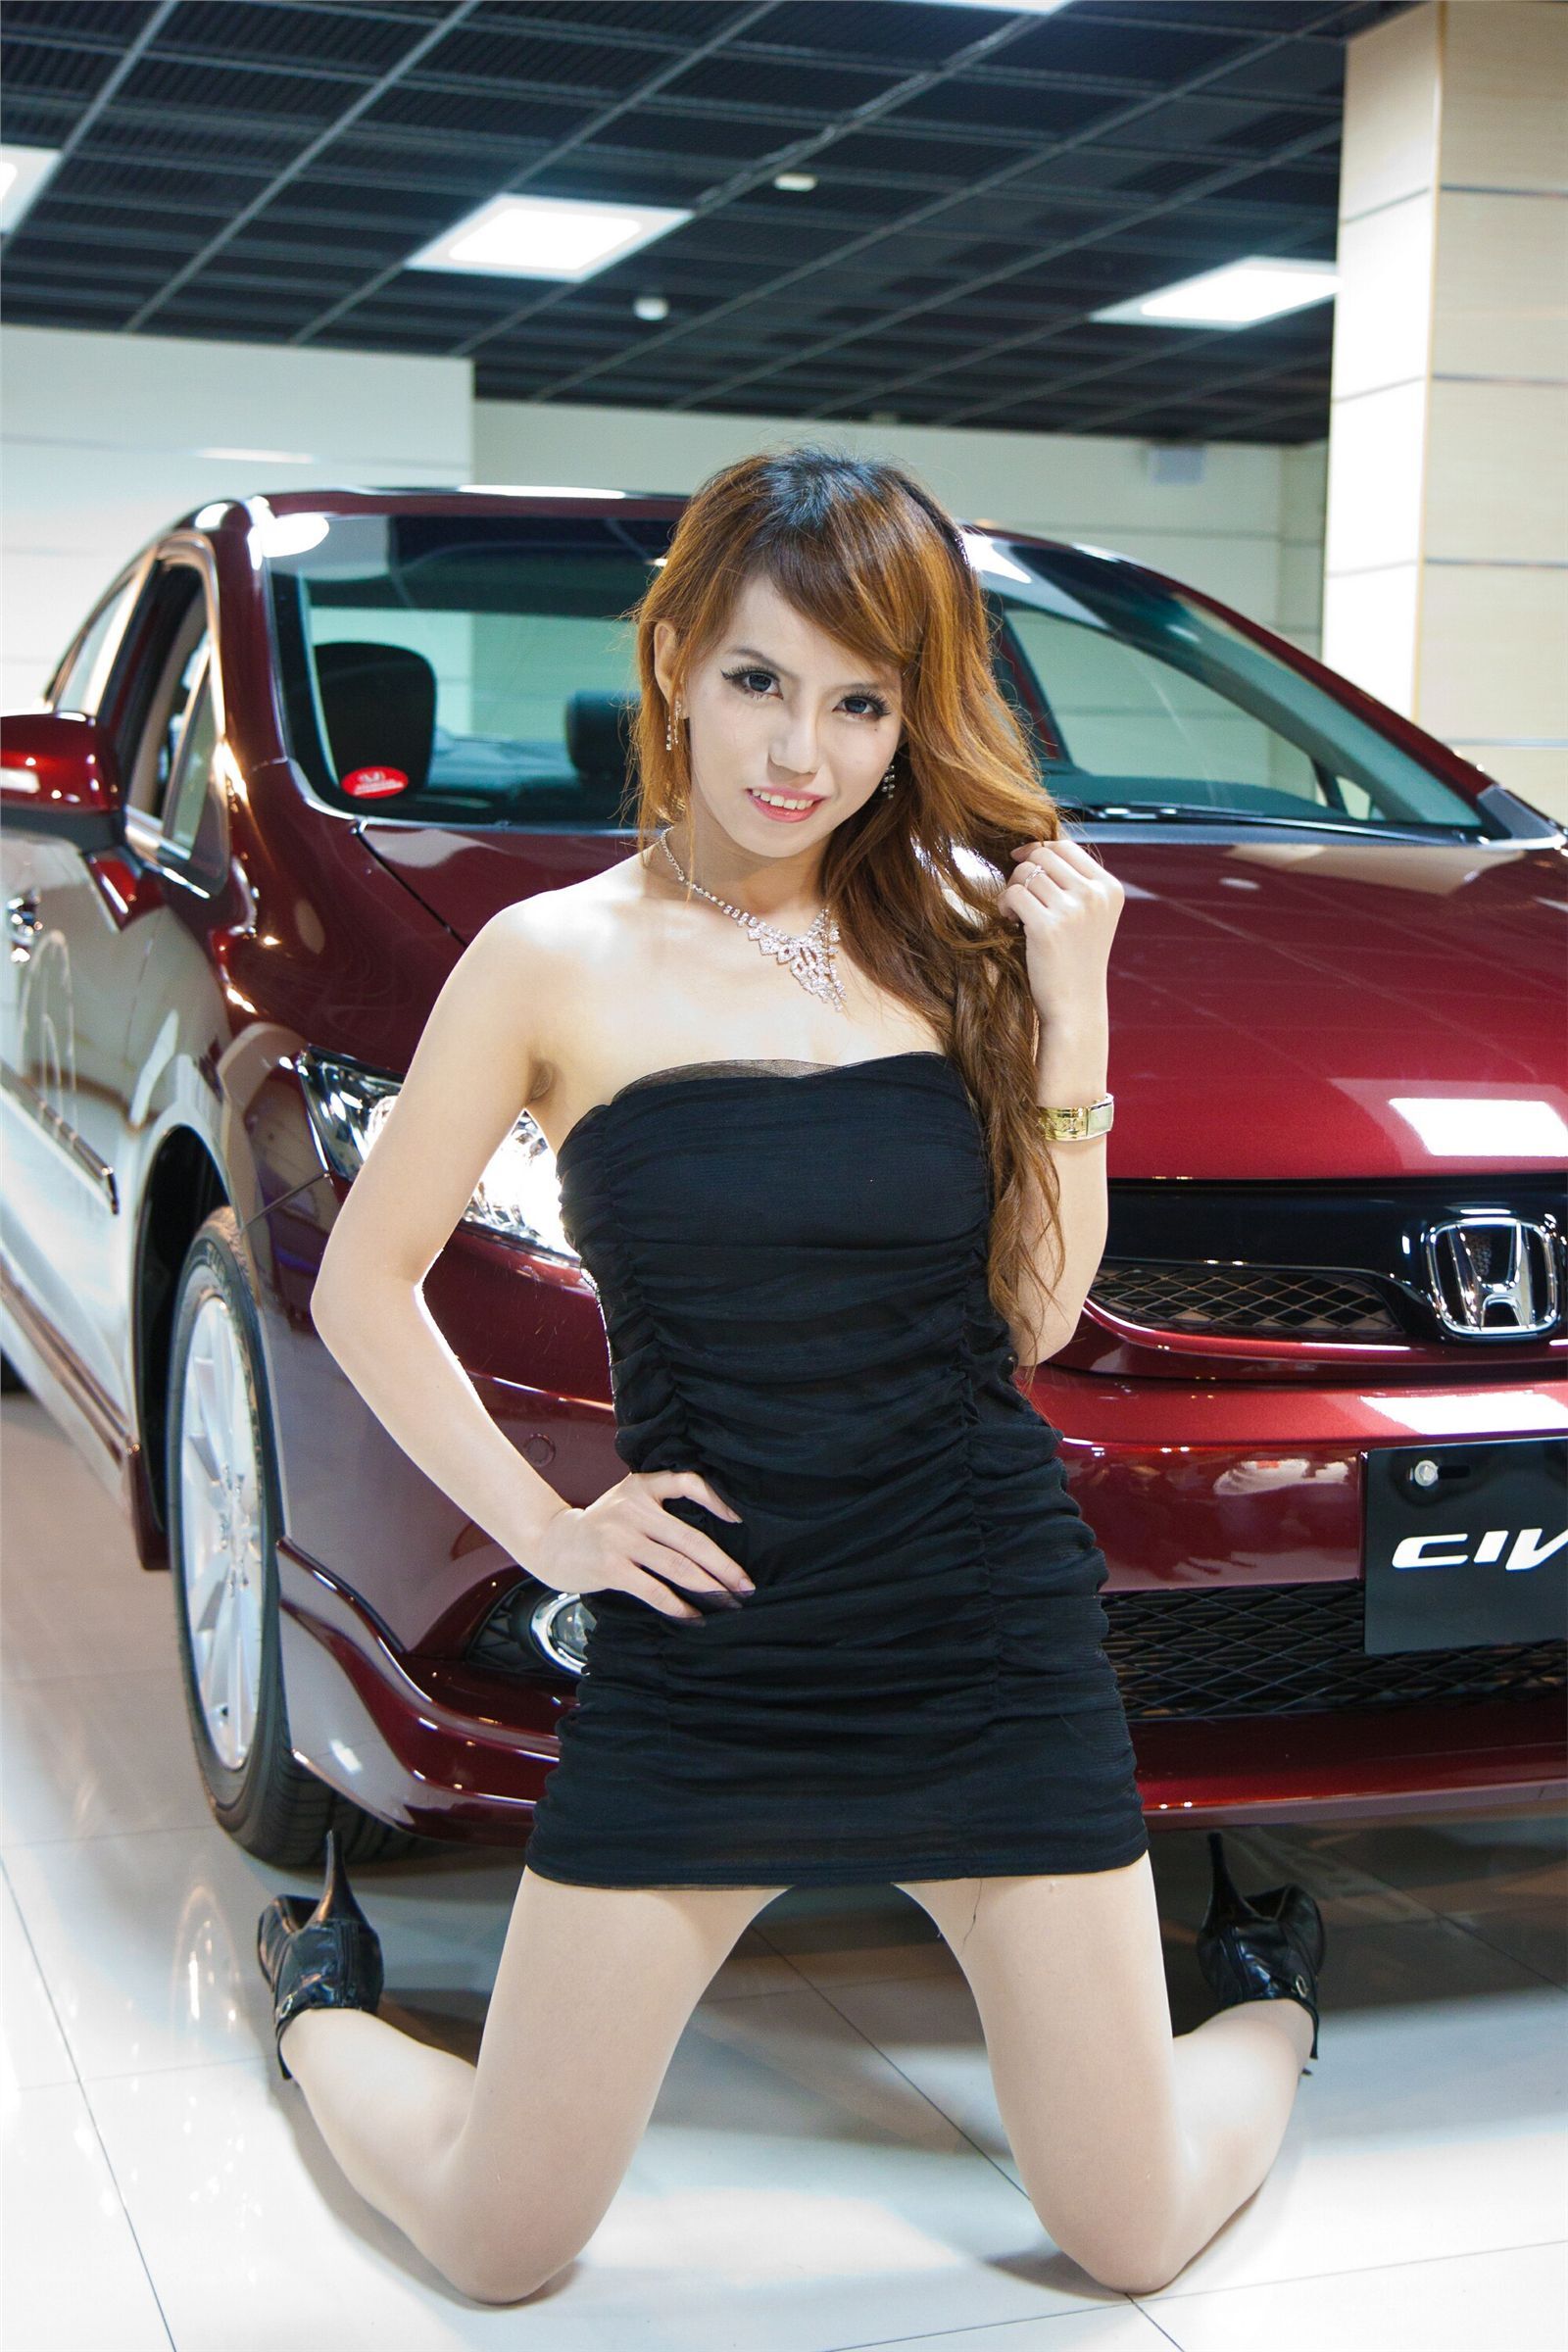 SG sexy beauty photo gallery of Honda Motor Show 2012 Honda Civic 9